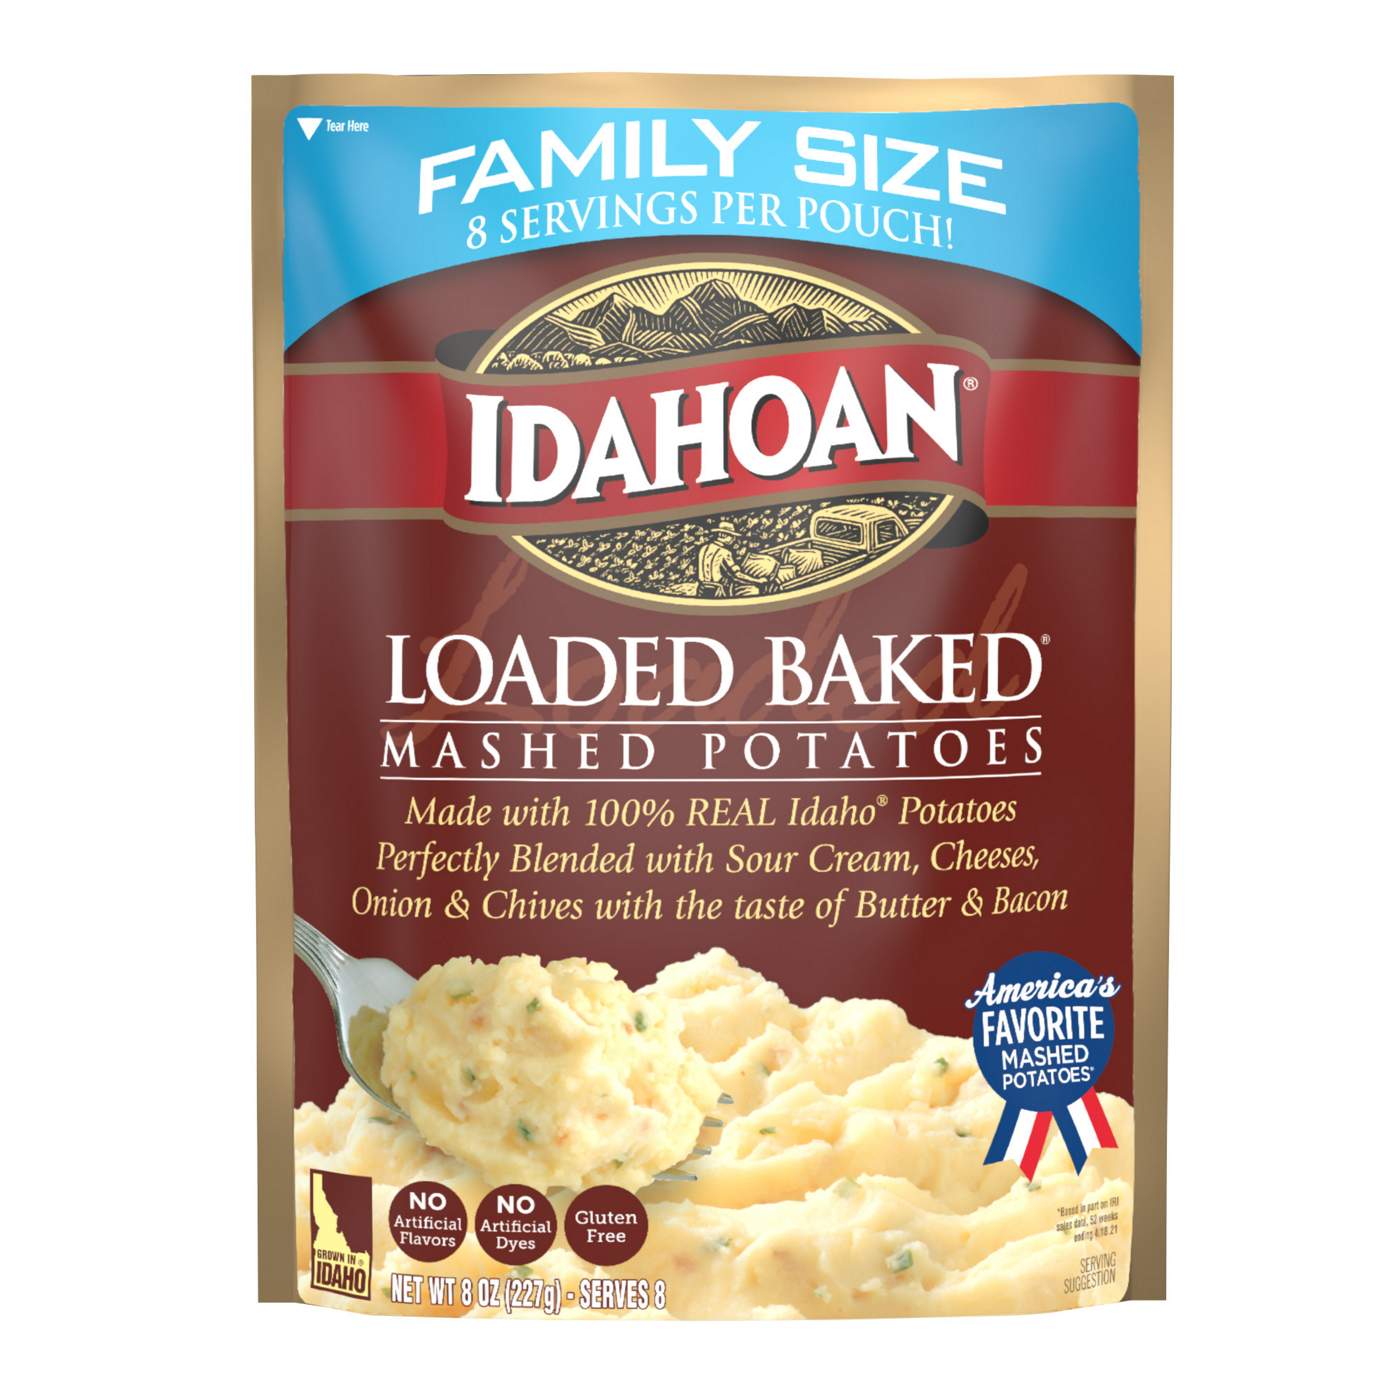 Idahoan Family Size Loaded Baked Mashed Potatoes; image 1 of 5